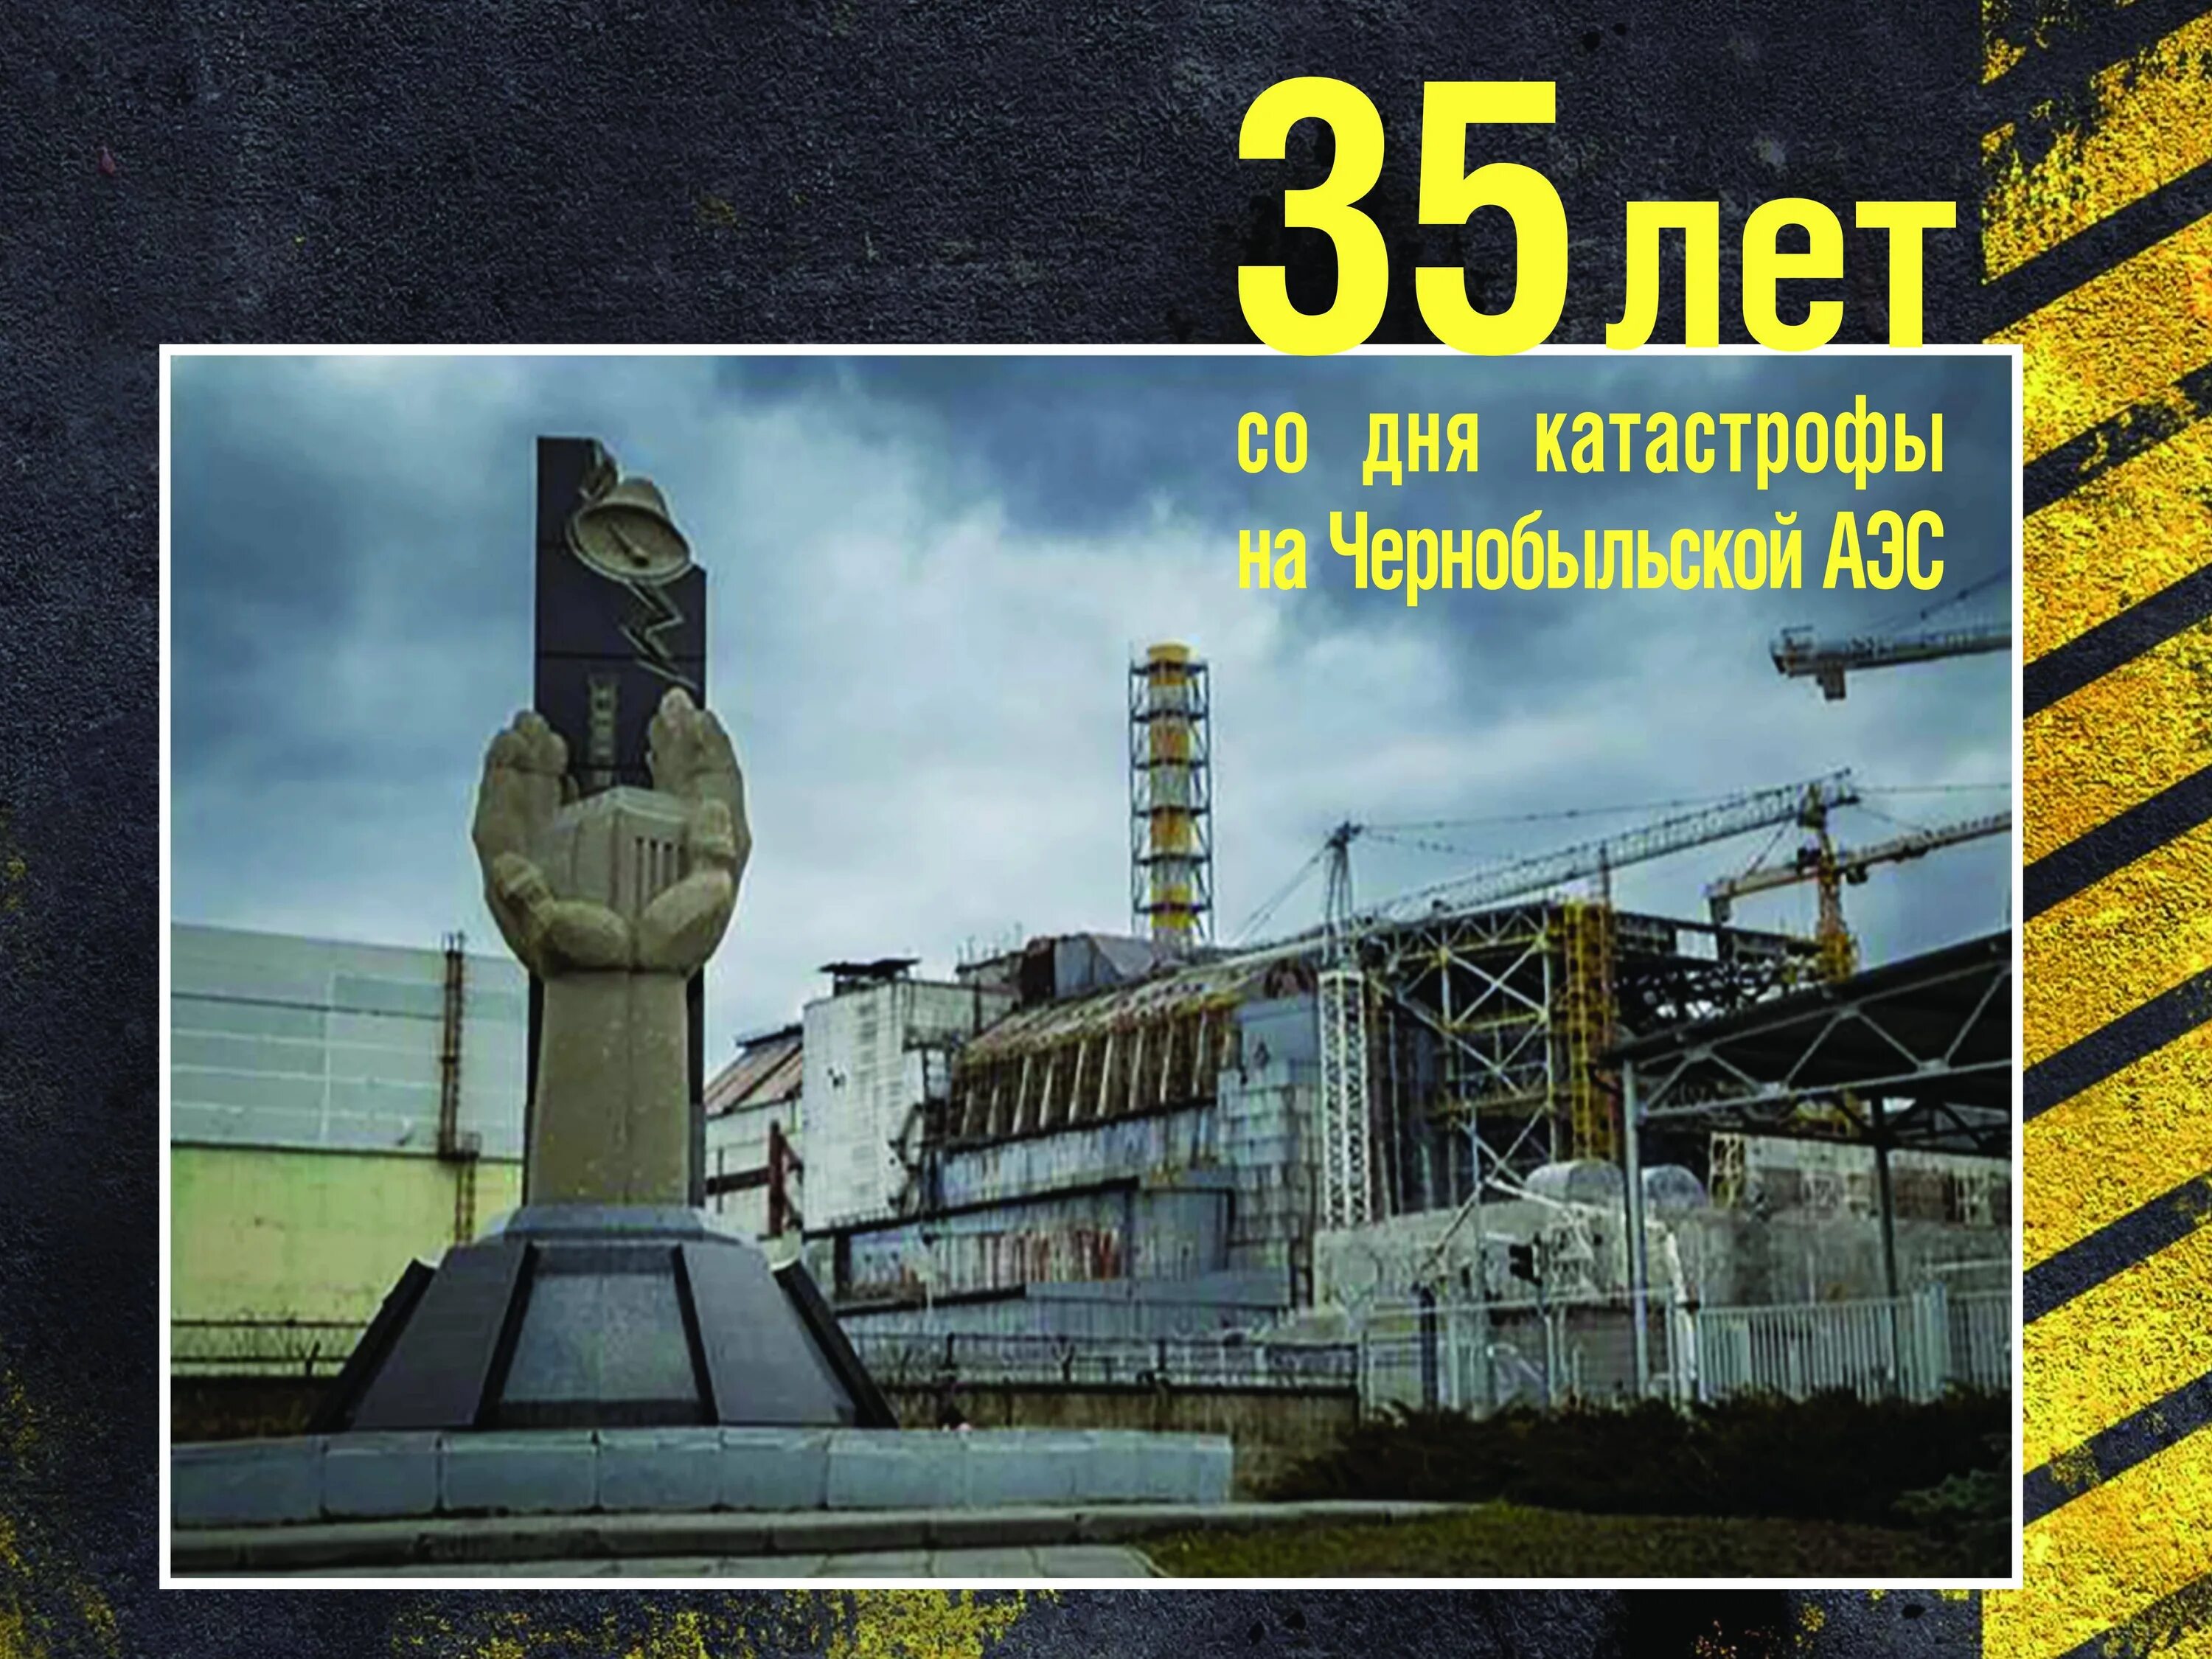 Результат аварии на чернобыльской аэс. 26 Апреля 1986 день памяти Чернобыльской АЭС. Чернобыль взрыв атомной станции 1986. ЧАЭС 26.04.1986. 35 Лет со дня аварии на Чернобыльской АЭС.